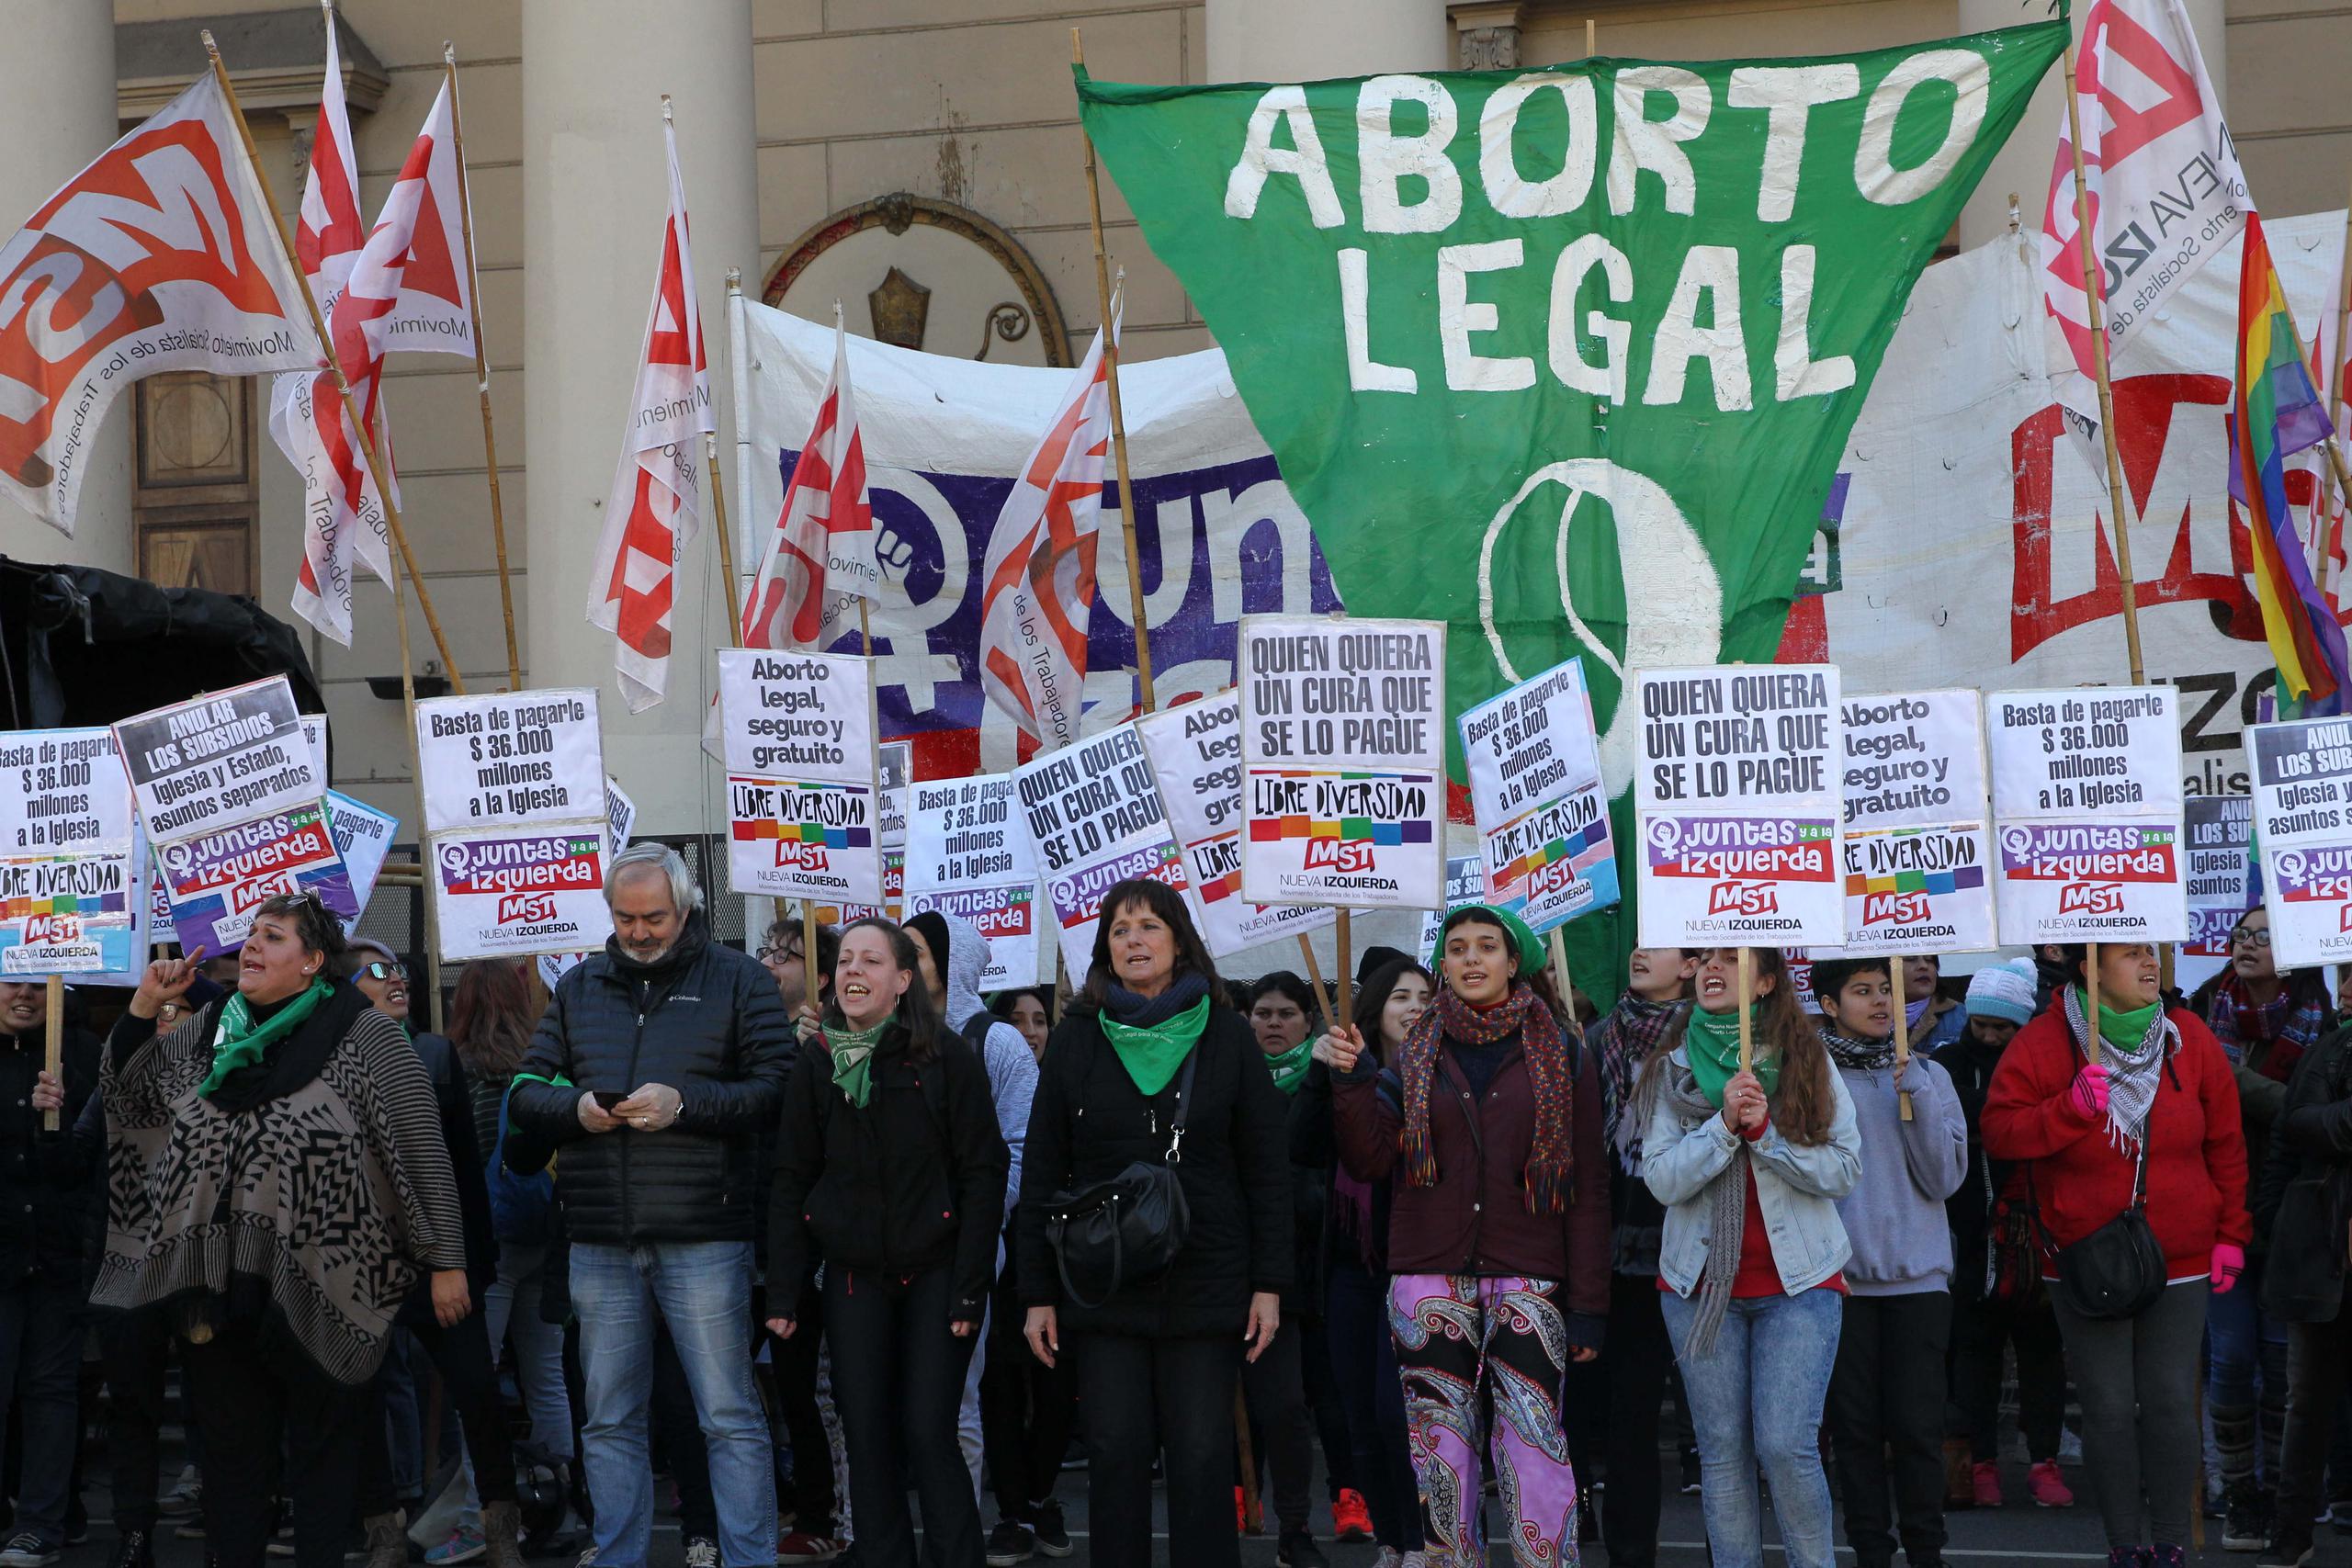 Decenas de personas participan en un "pañuelazo" verde, emblema de la lucha por la legalización del aborto en Argentina.